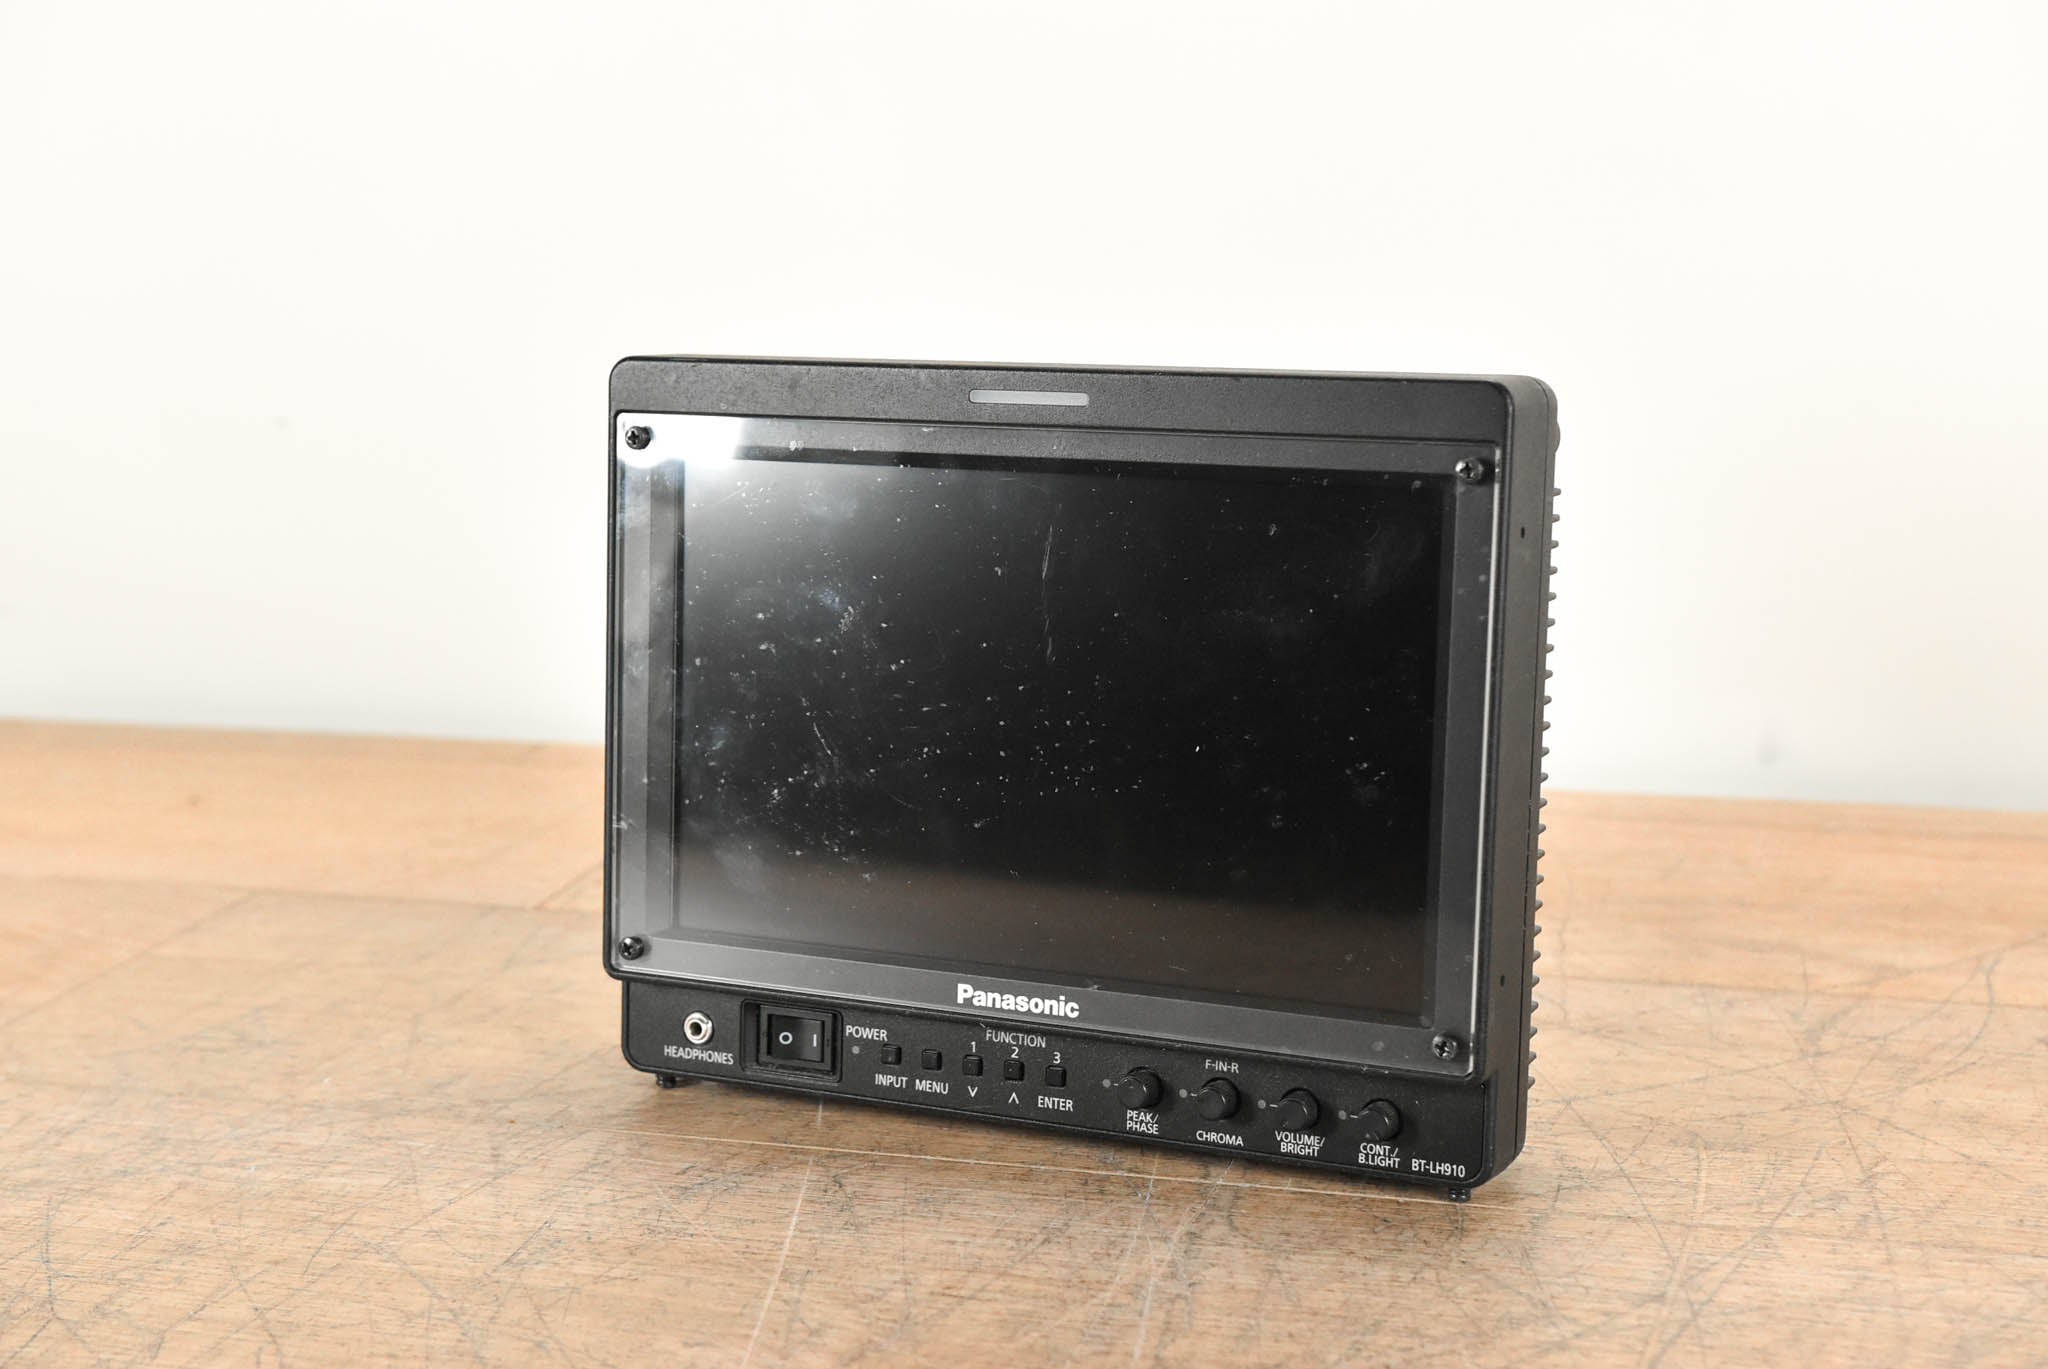 Panasonic BT-LH910G 9" LCD HDMI / SDI Video Monitor